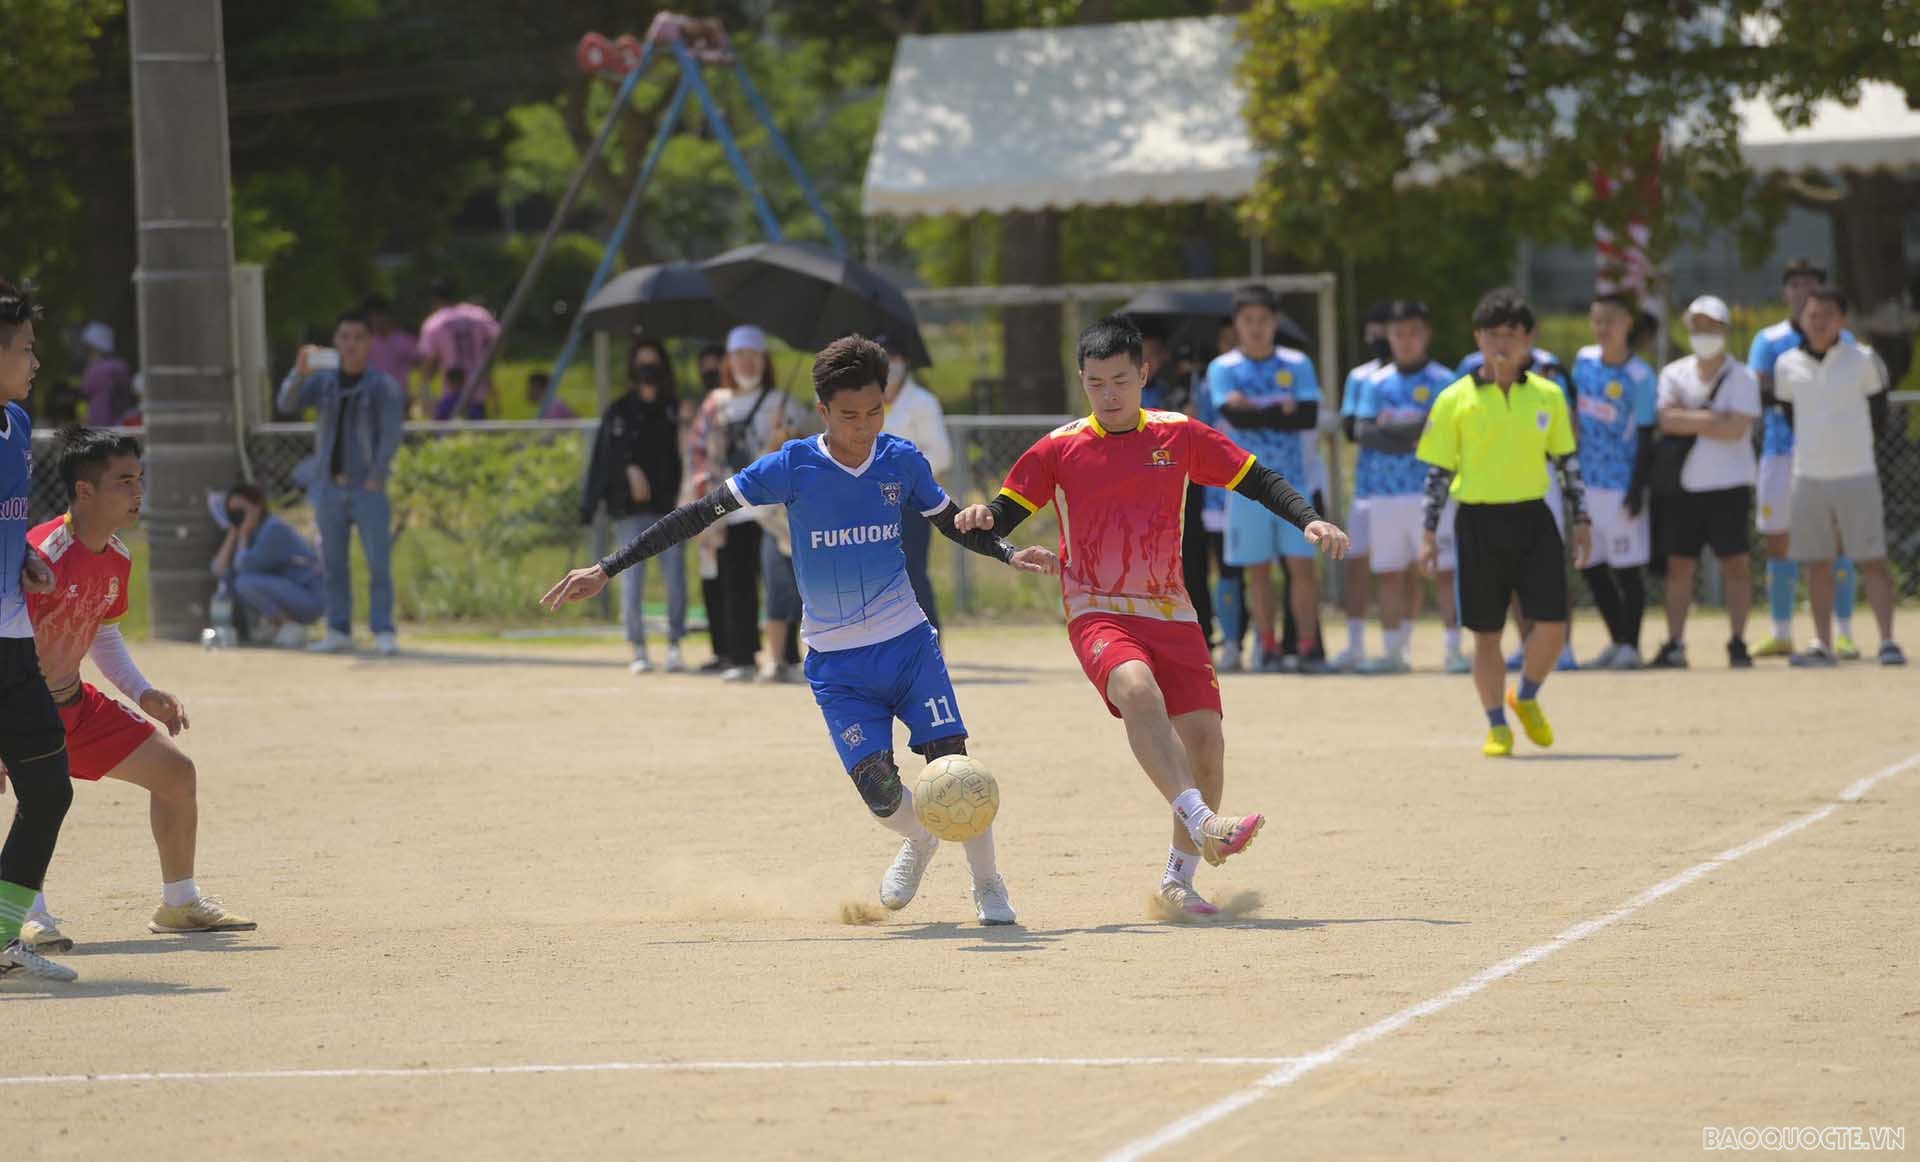 Tổ chức thành công Đại hội thể thao người Việt Nam tại Kitakyushu, Nhật Bản lần thứ nhất